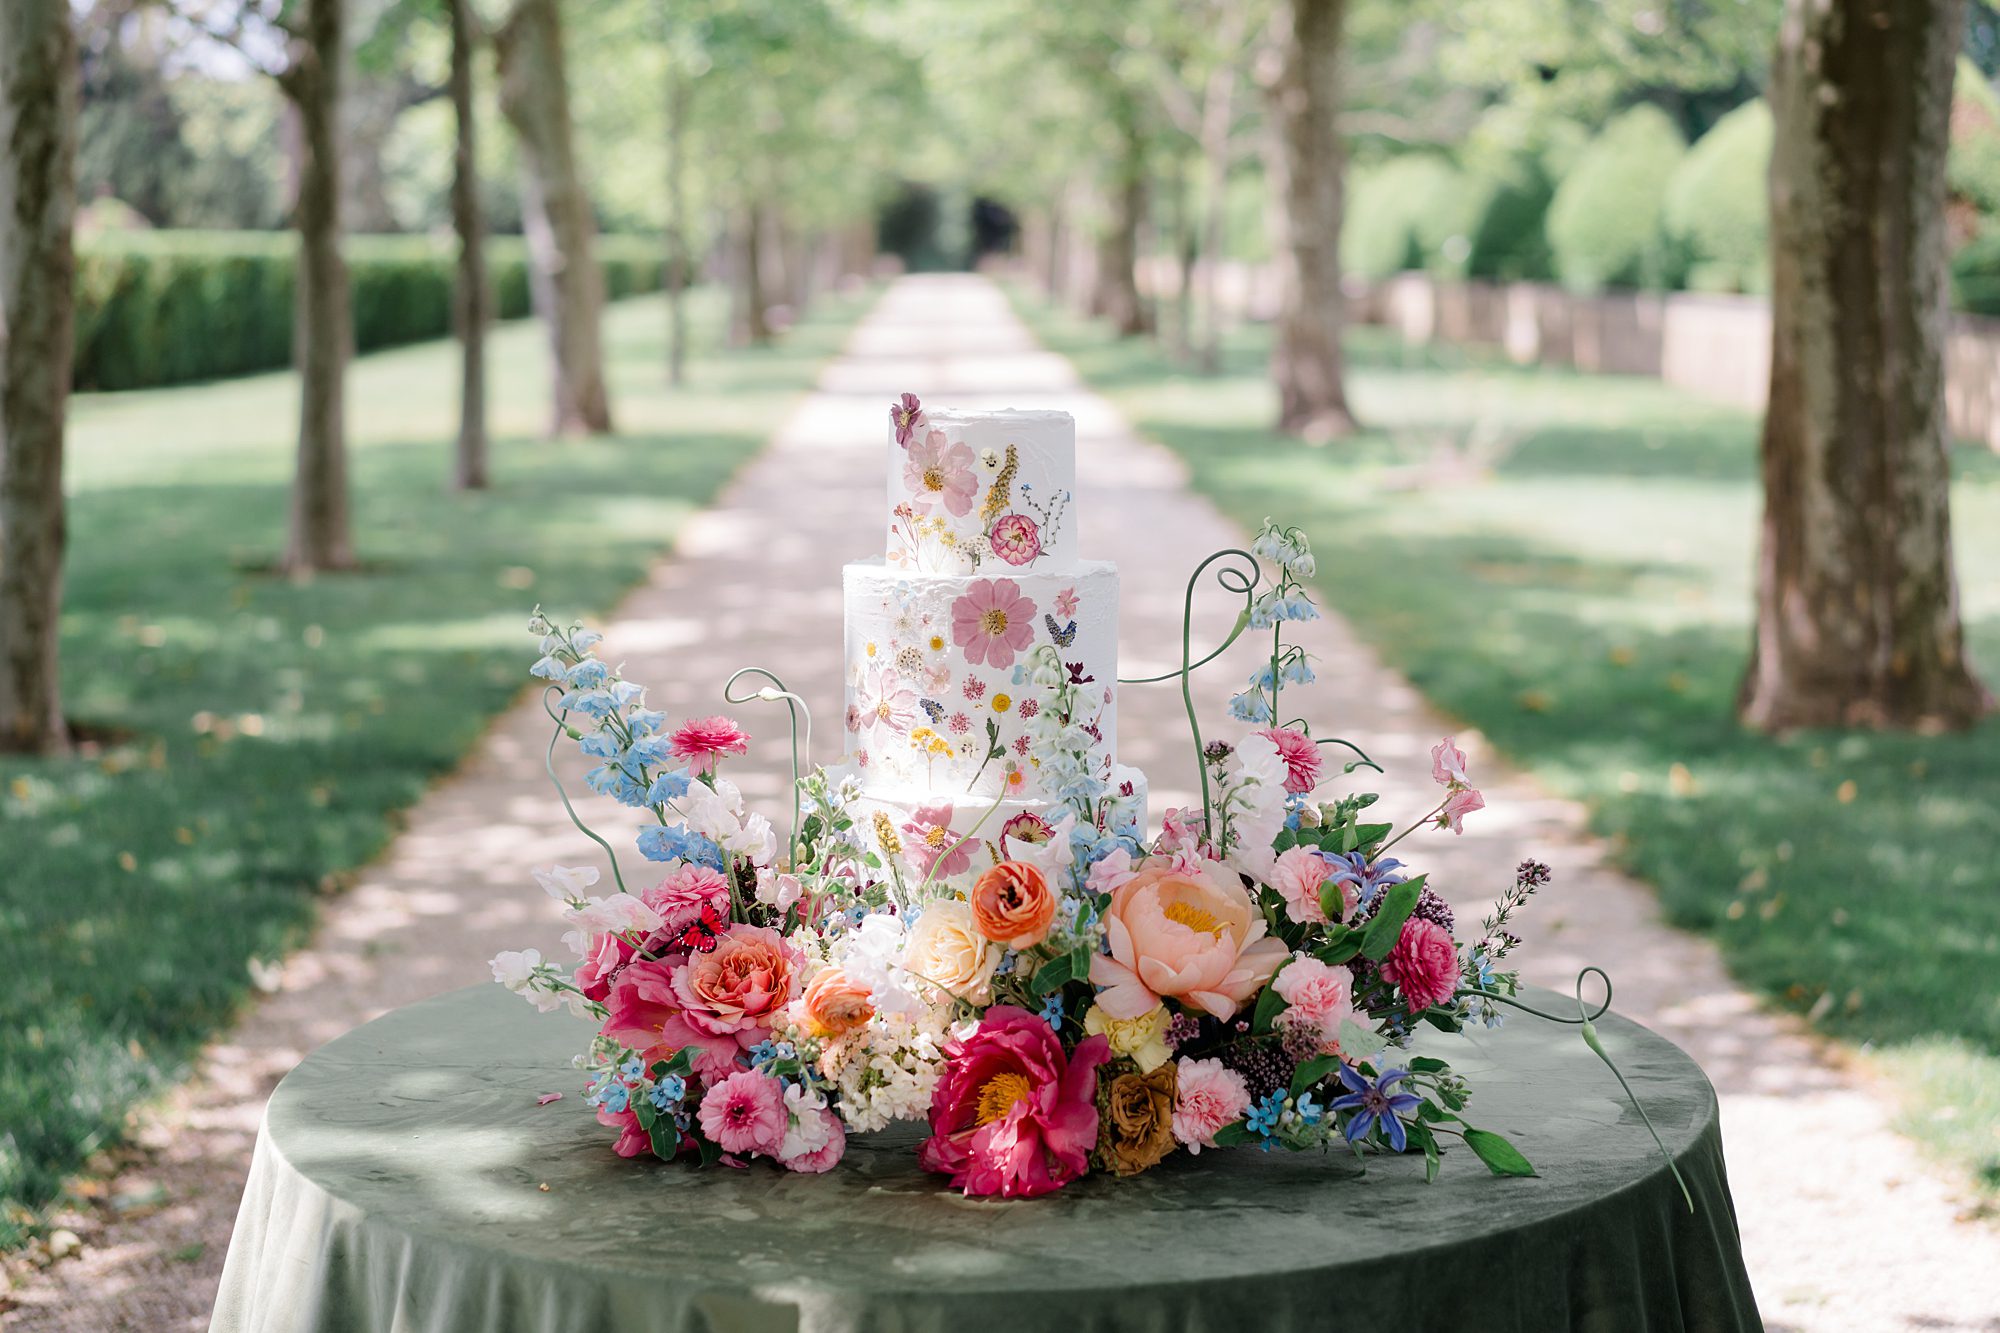 vibrant wedding florals around wedding cake